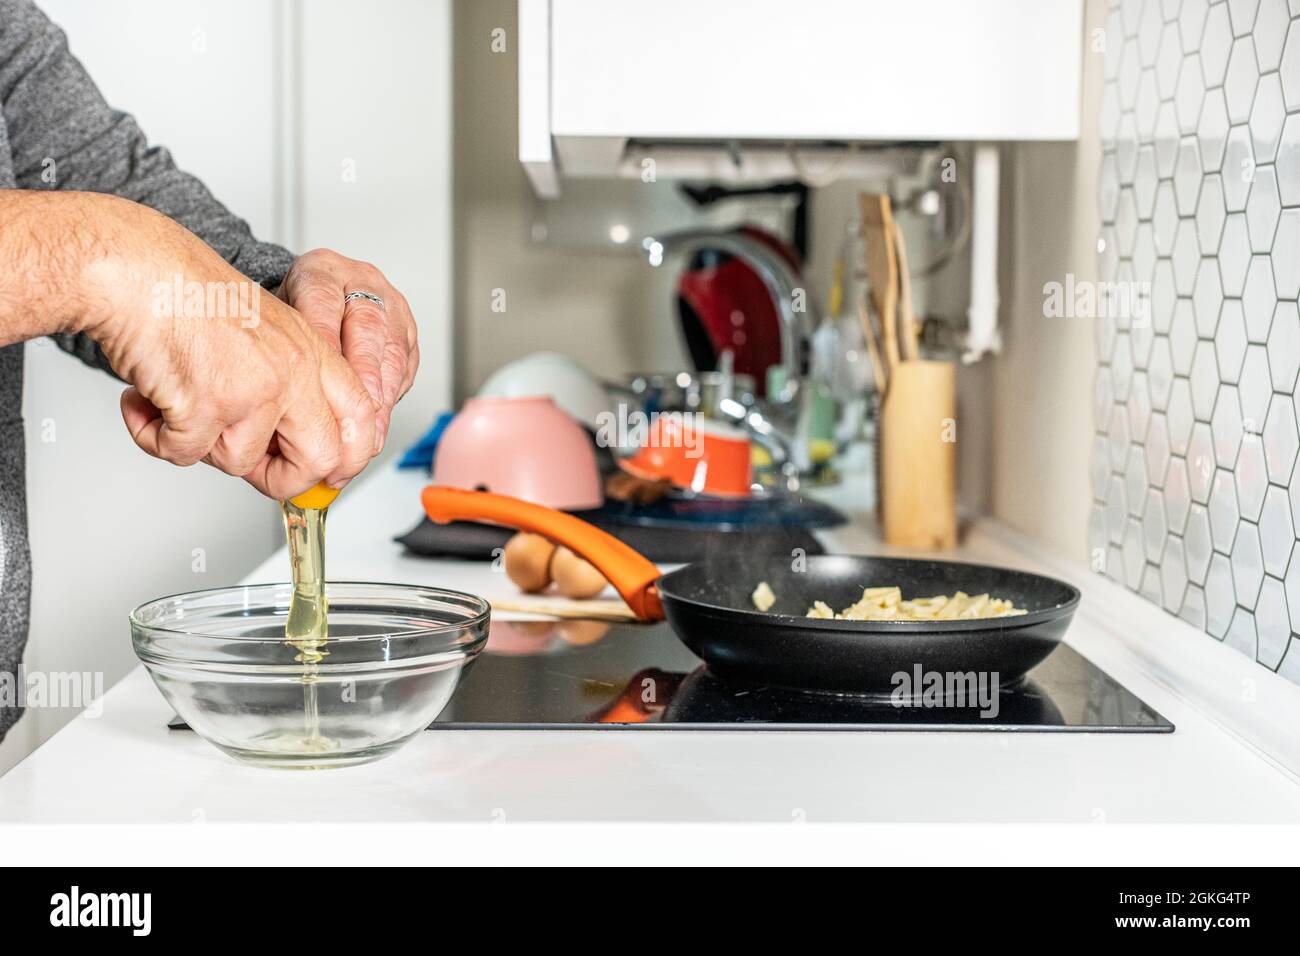 Die Hände des Mannes zerbrechen Eier, schlagen sie und mischen sie mit geschmorten Kartoffeln, um ein spanisches Omelett zuzubereiten Stockfoto